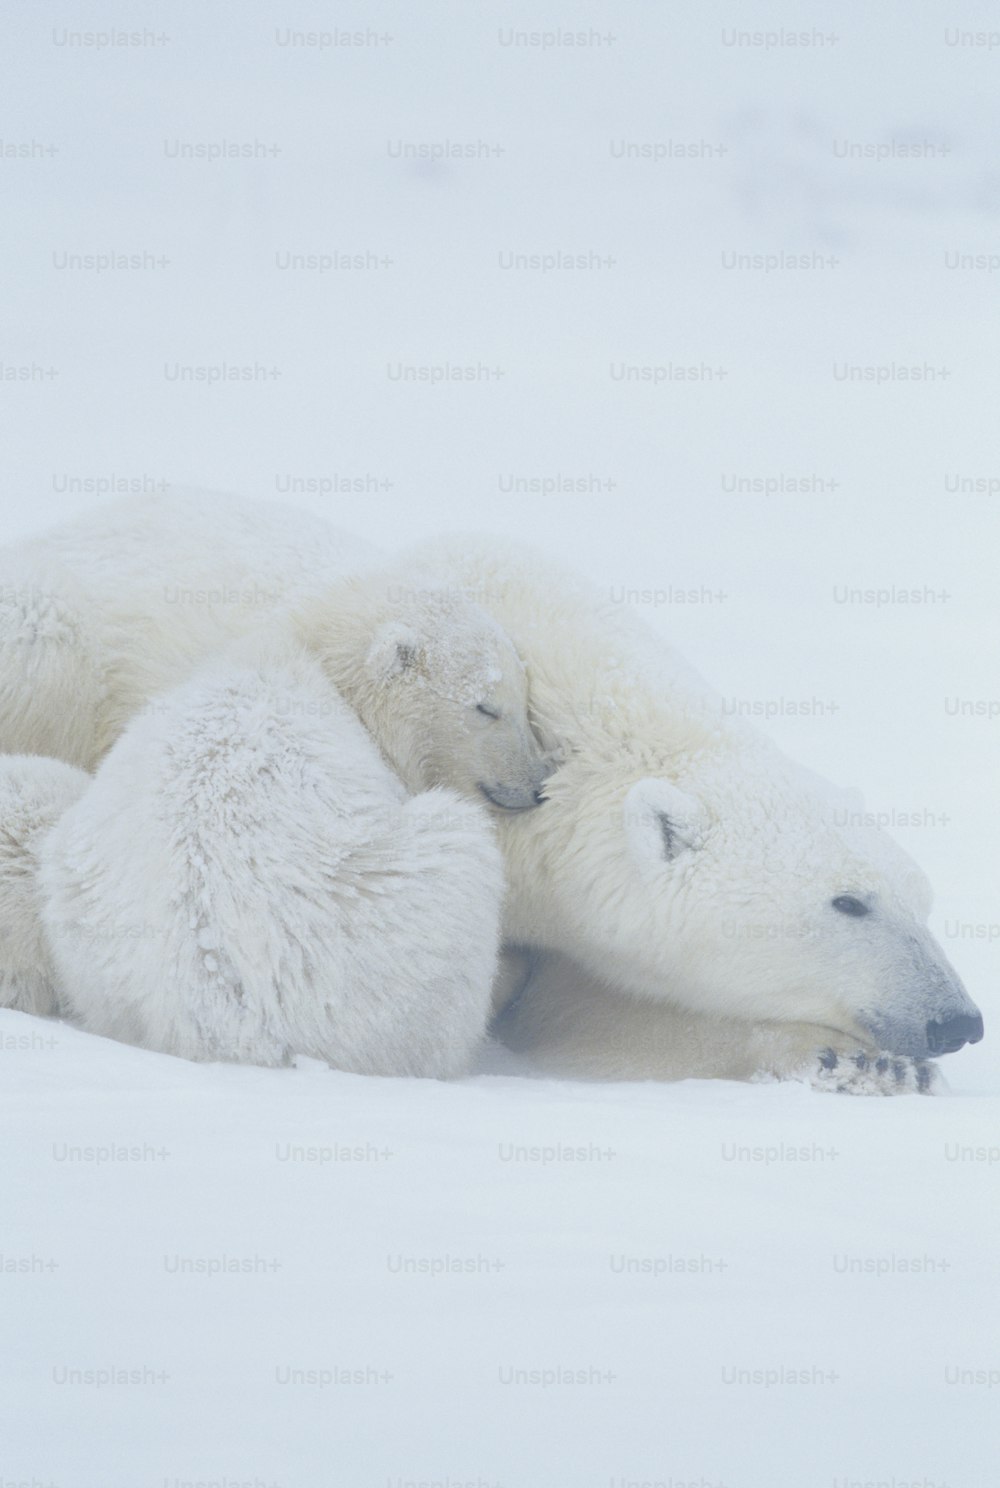 두 마리의 북극곰이 눈 속에 누워 있다